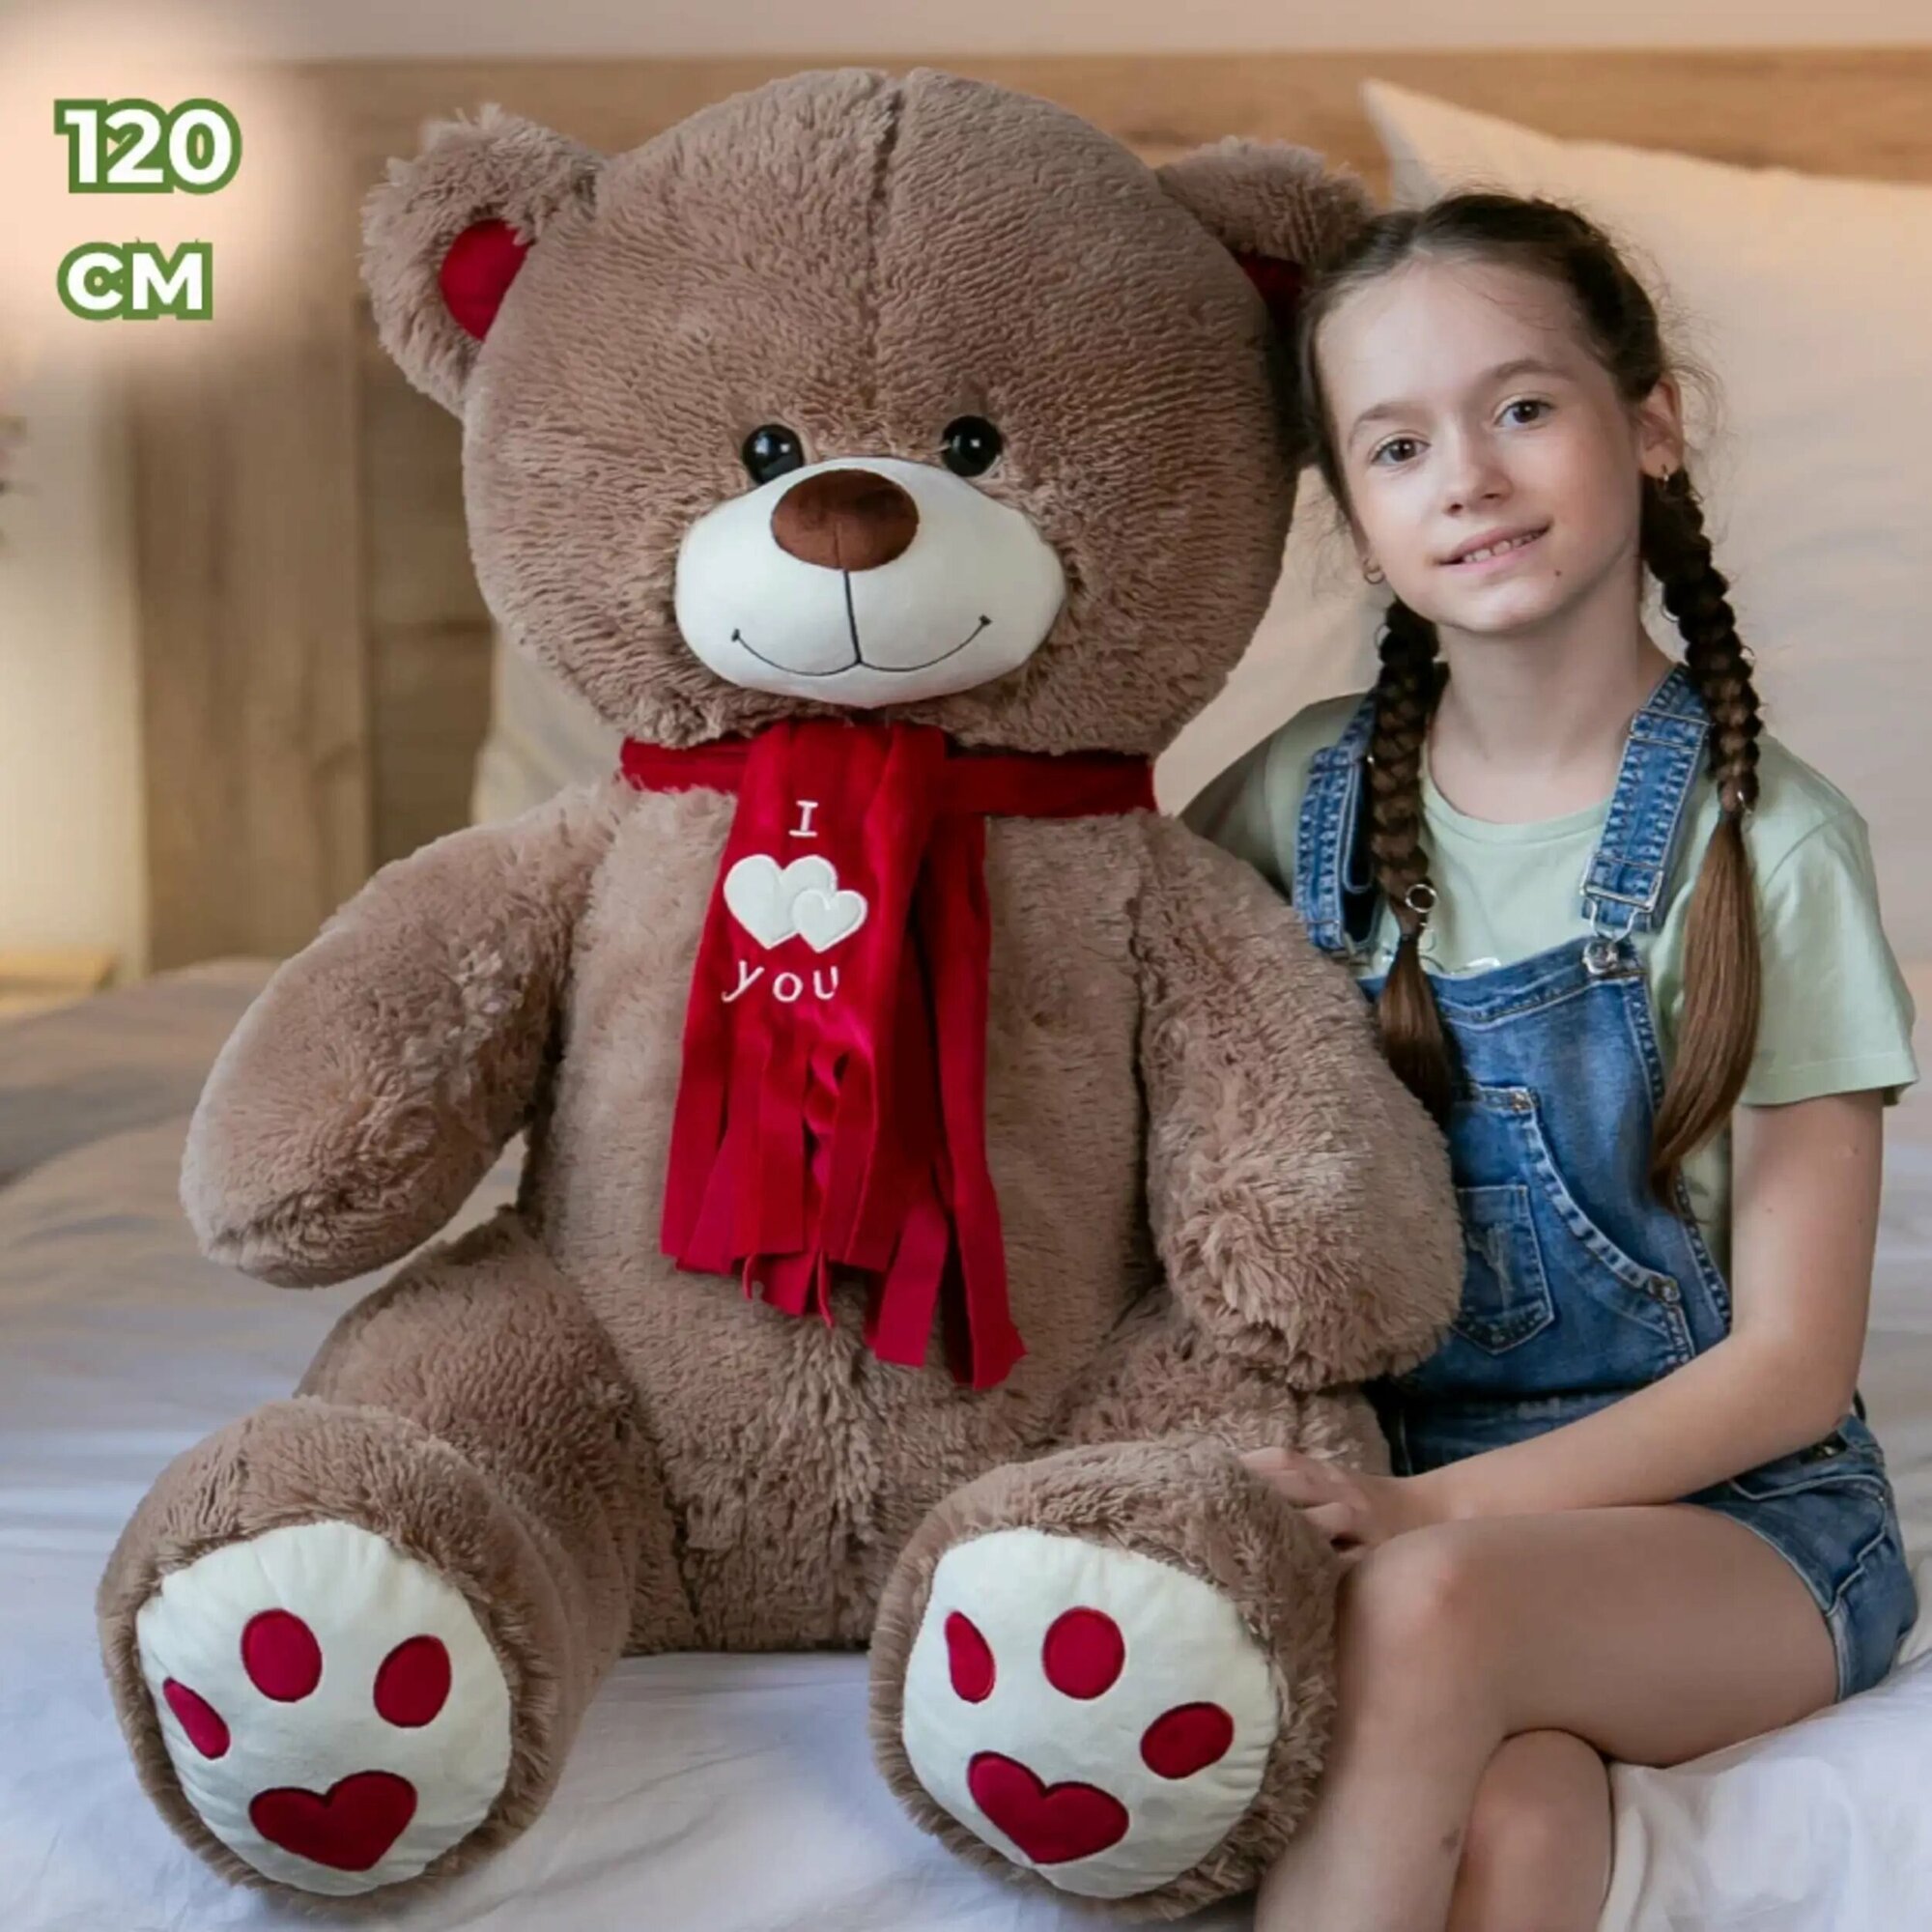 Мягкая игрушка огромный плюшевый медведь Кельвин 120 см, большой мишка, подарок девушке, ребенку на день рождение, цвет бурый